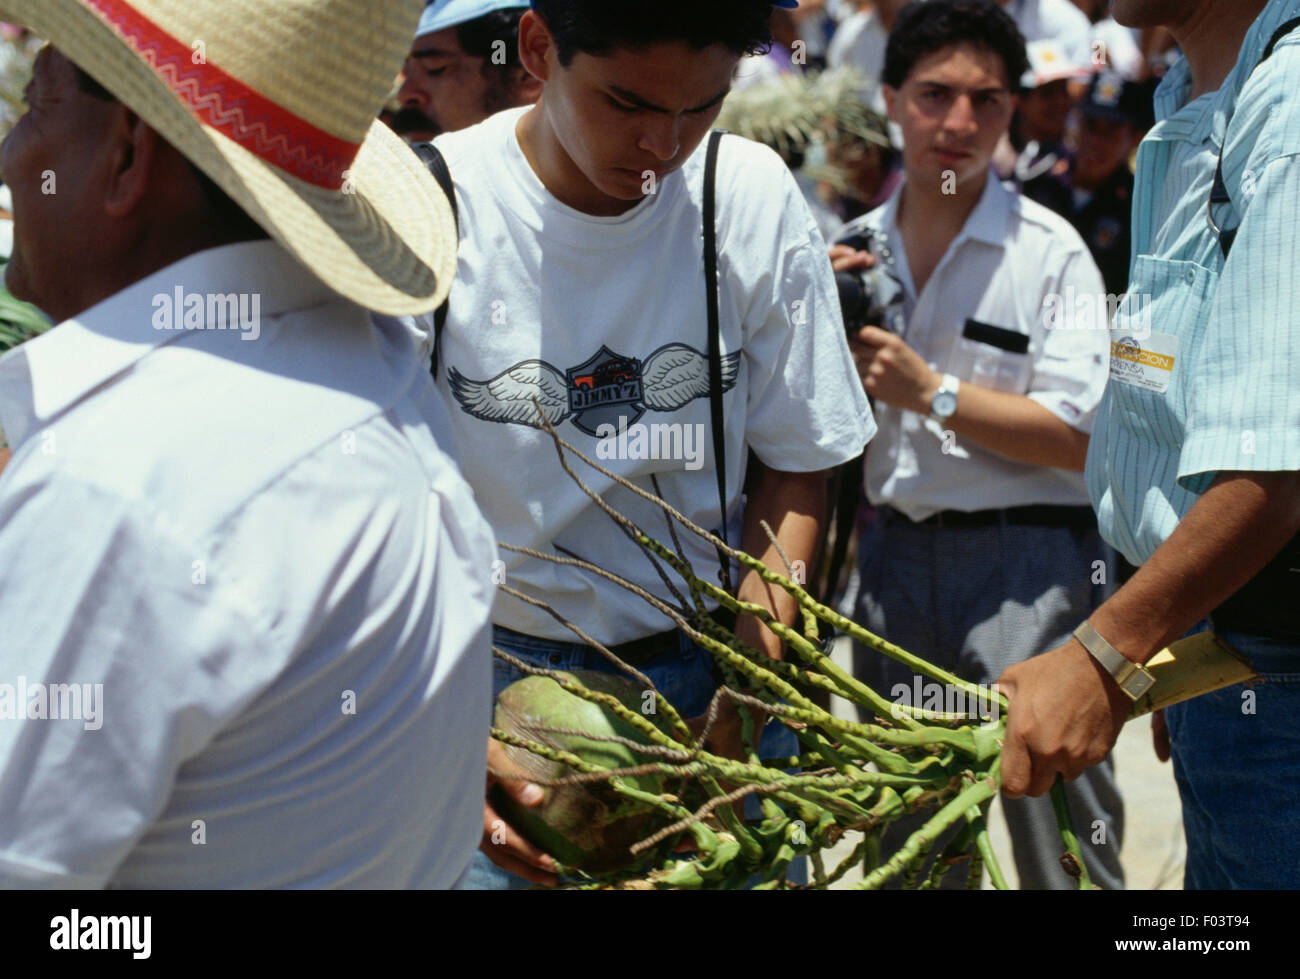 Un uomo con i doni che ha ricevuto durante i festeggiamenti presso il festival Guelaguetza, Oaxaca, Messico. Foto Stock